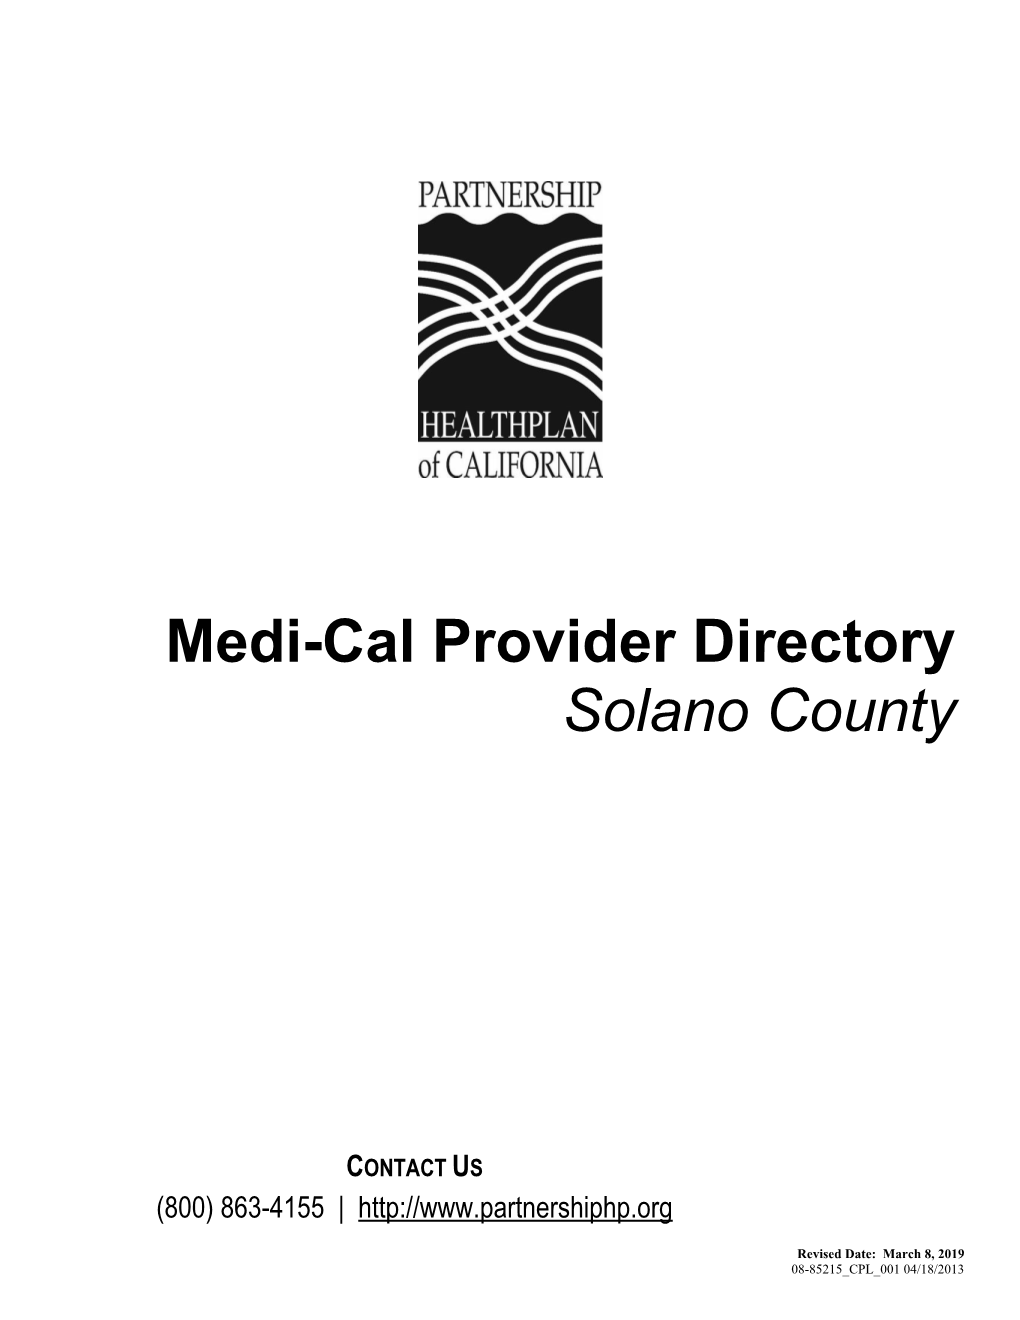 Solano County Medi-Cal Provider Directory